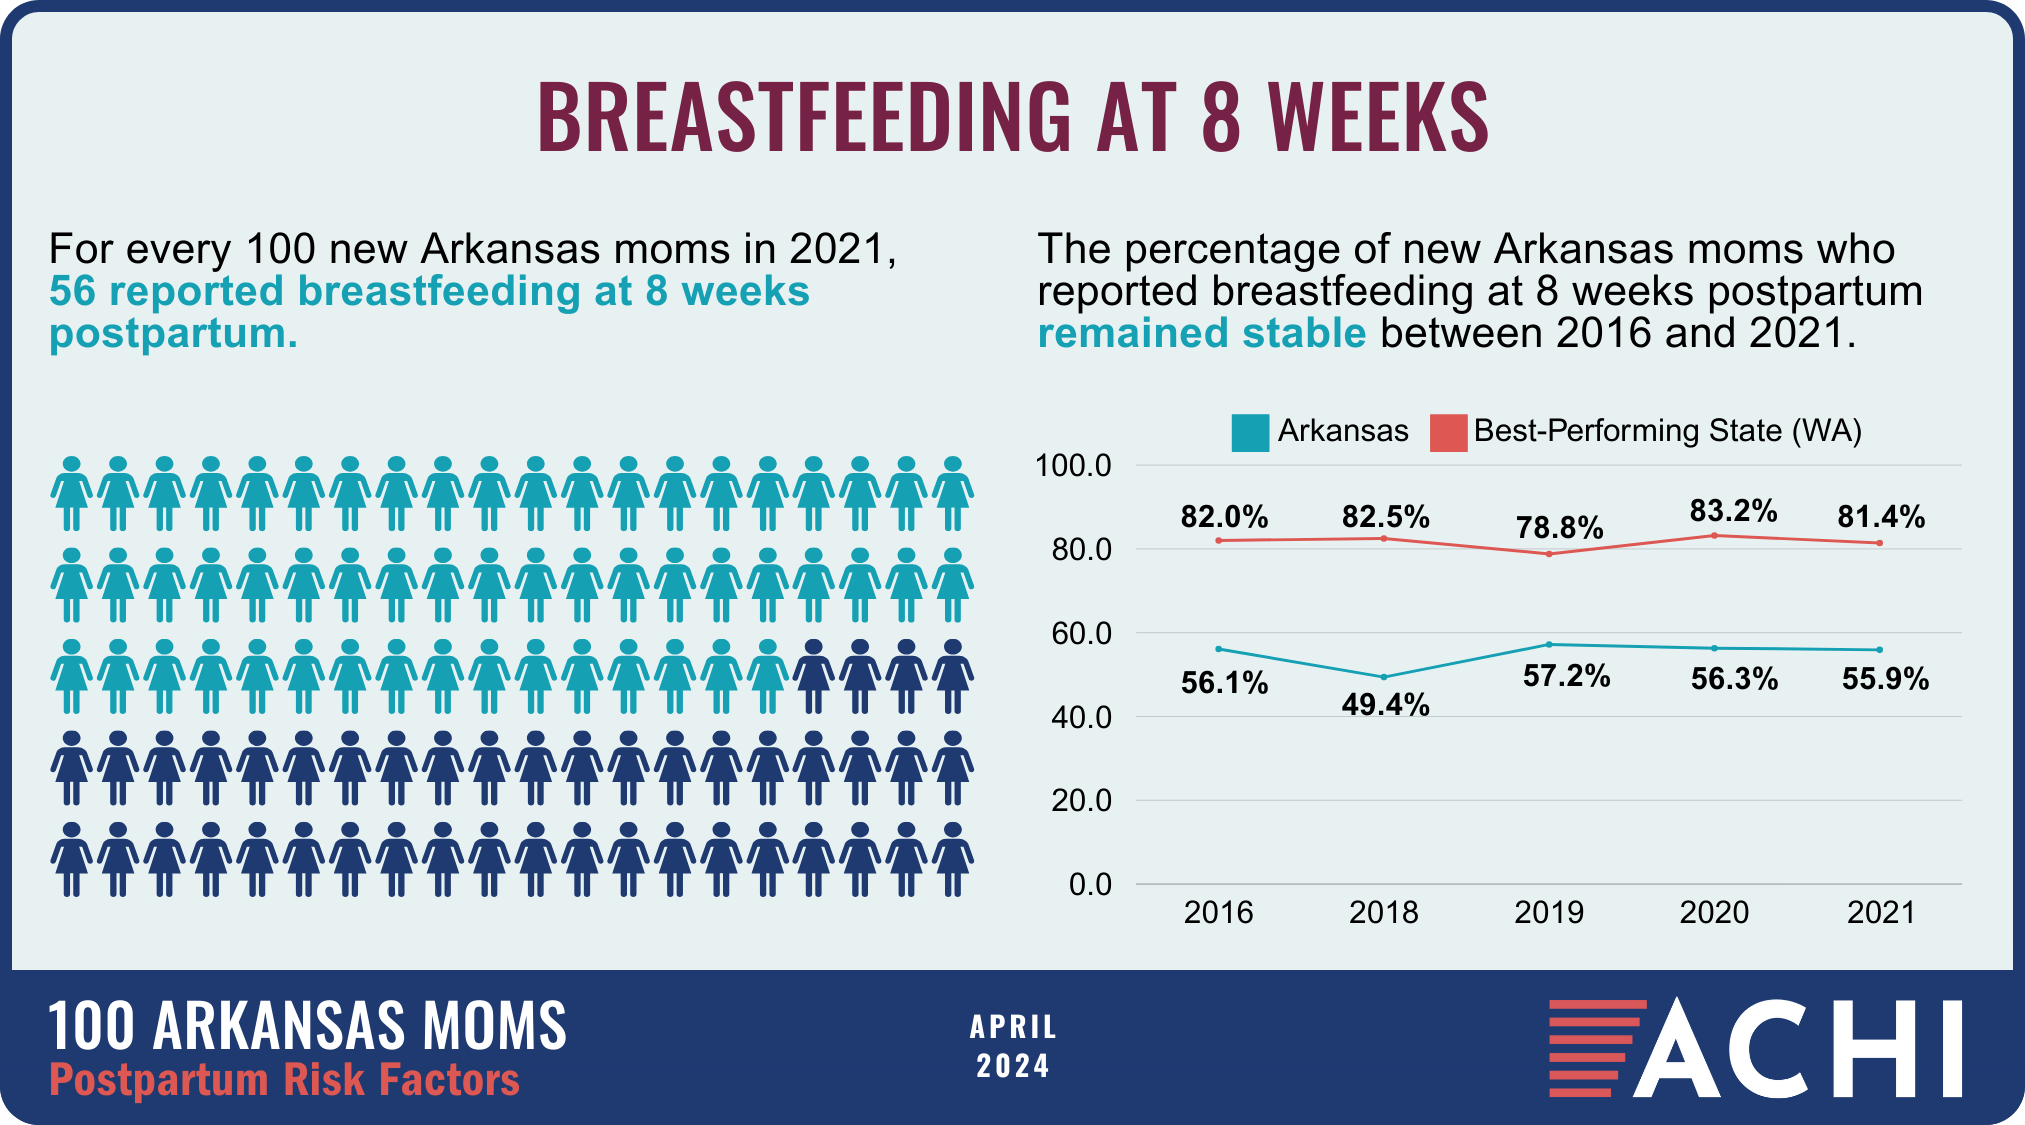 27_240418_100 Arkansas Moms_Postpartum Risk Factors_Breastfeeding at 8 Weeks